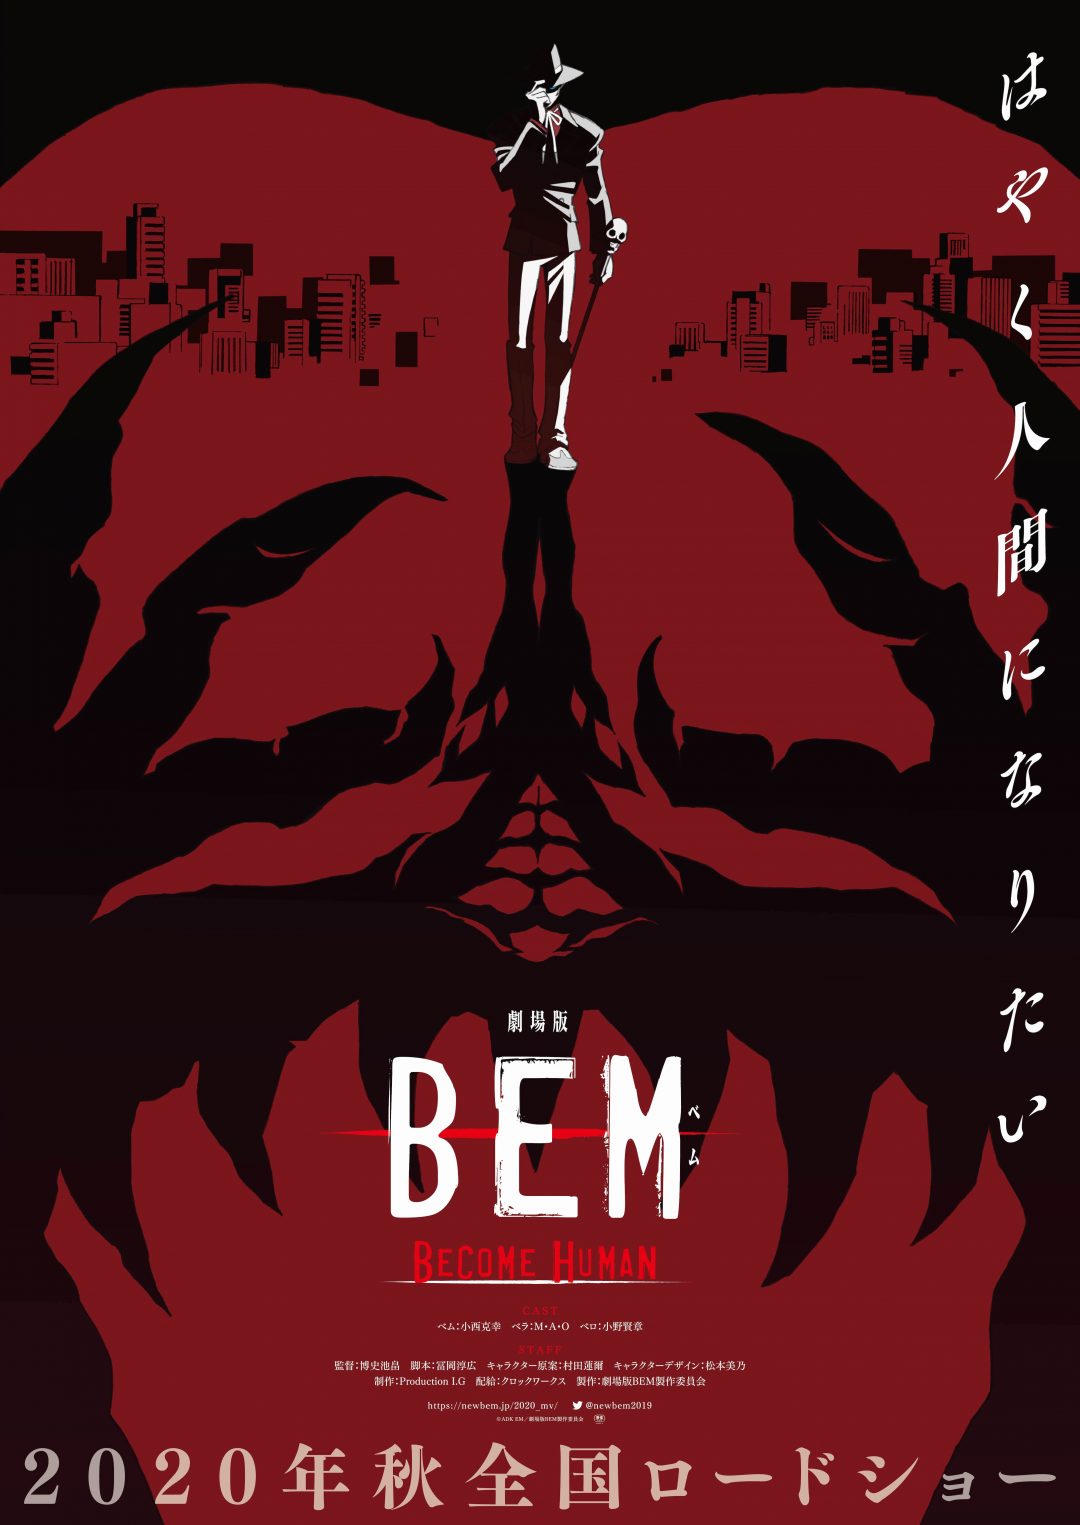 妖怪人間ベム の新作アニメが映画化決定 劇場版bem Become Human は年秋に全国公開 コロコロオンライン コロコロコミック公式